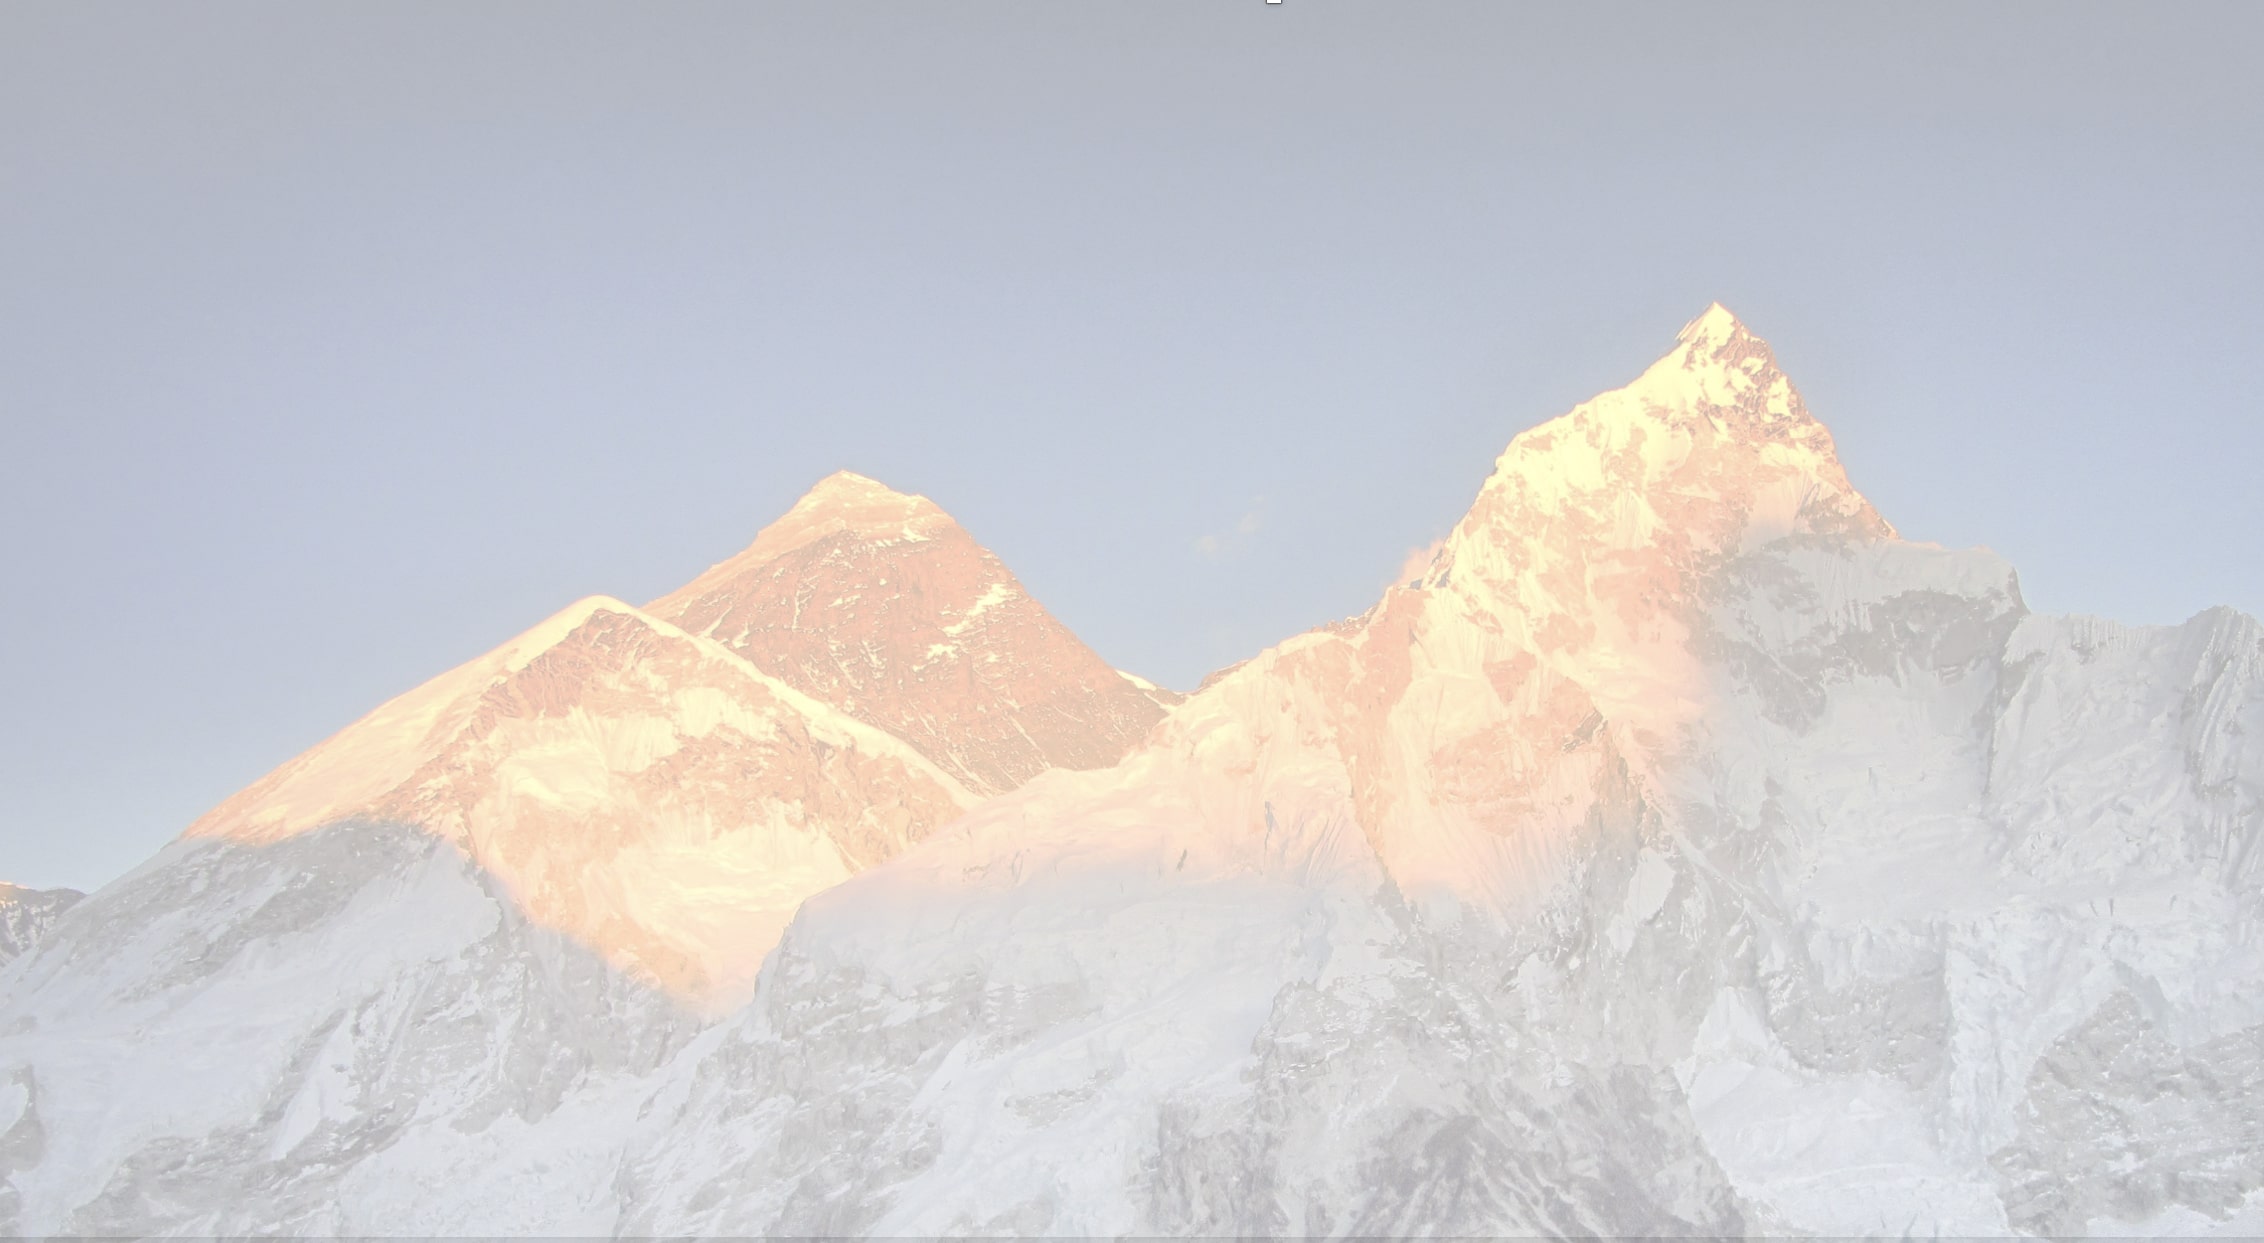 Ein Bild von einem Berg, die Bergspitzen werden durch die Sonne beleuchtet. Das Bild simbolisiert die Vision von Managed Cloud Services.